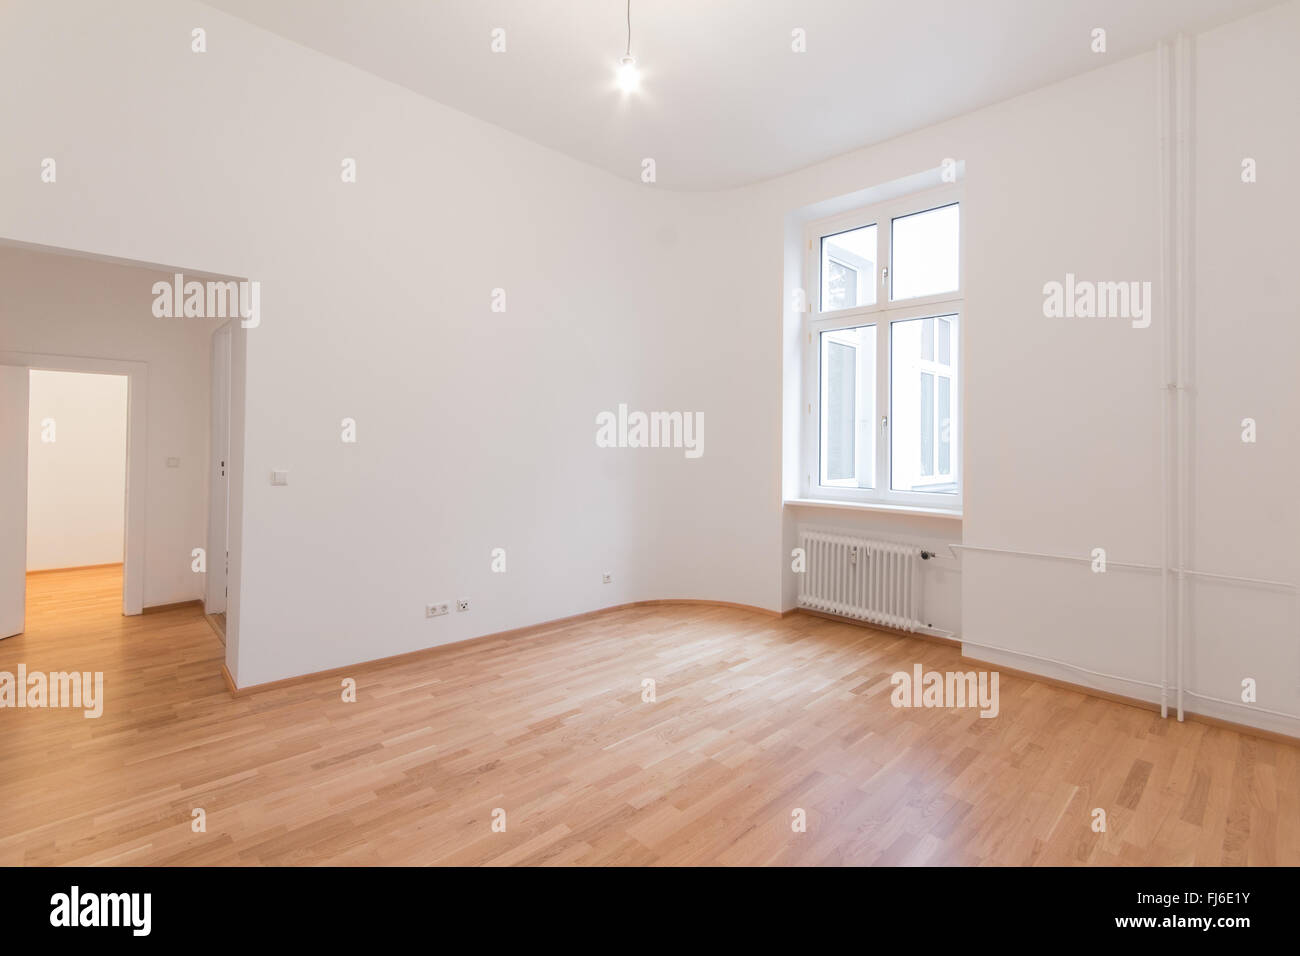 Recién renovado piso - Casa / apartamento - habitación recientemente renovada con suelo de roble de madera, paredes blancas y ventanas Foto de stock